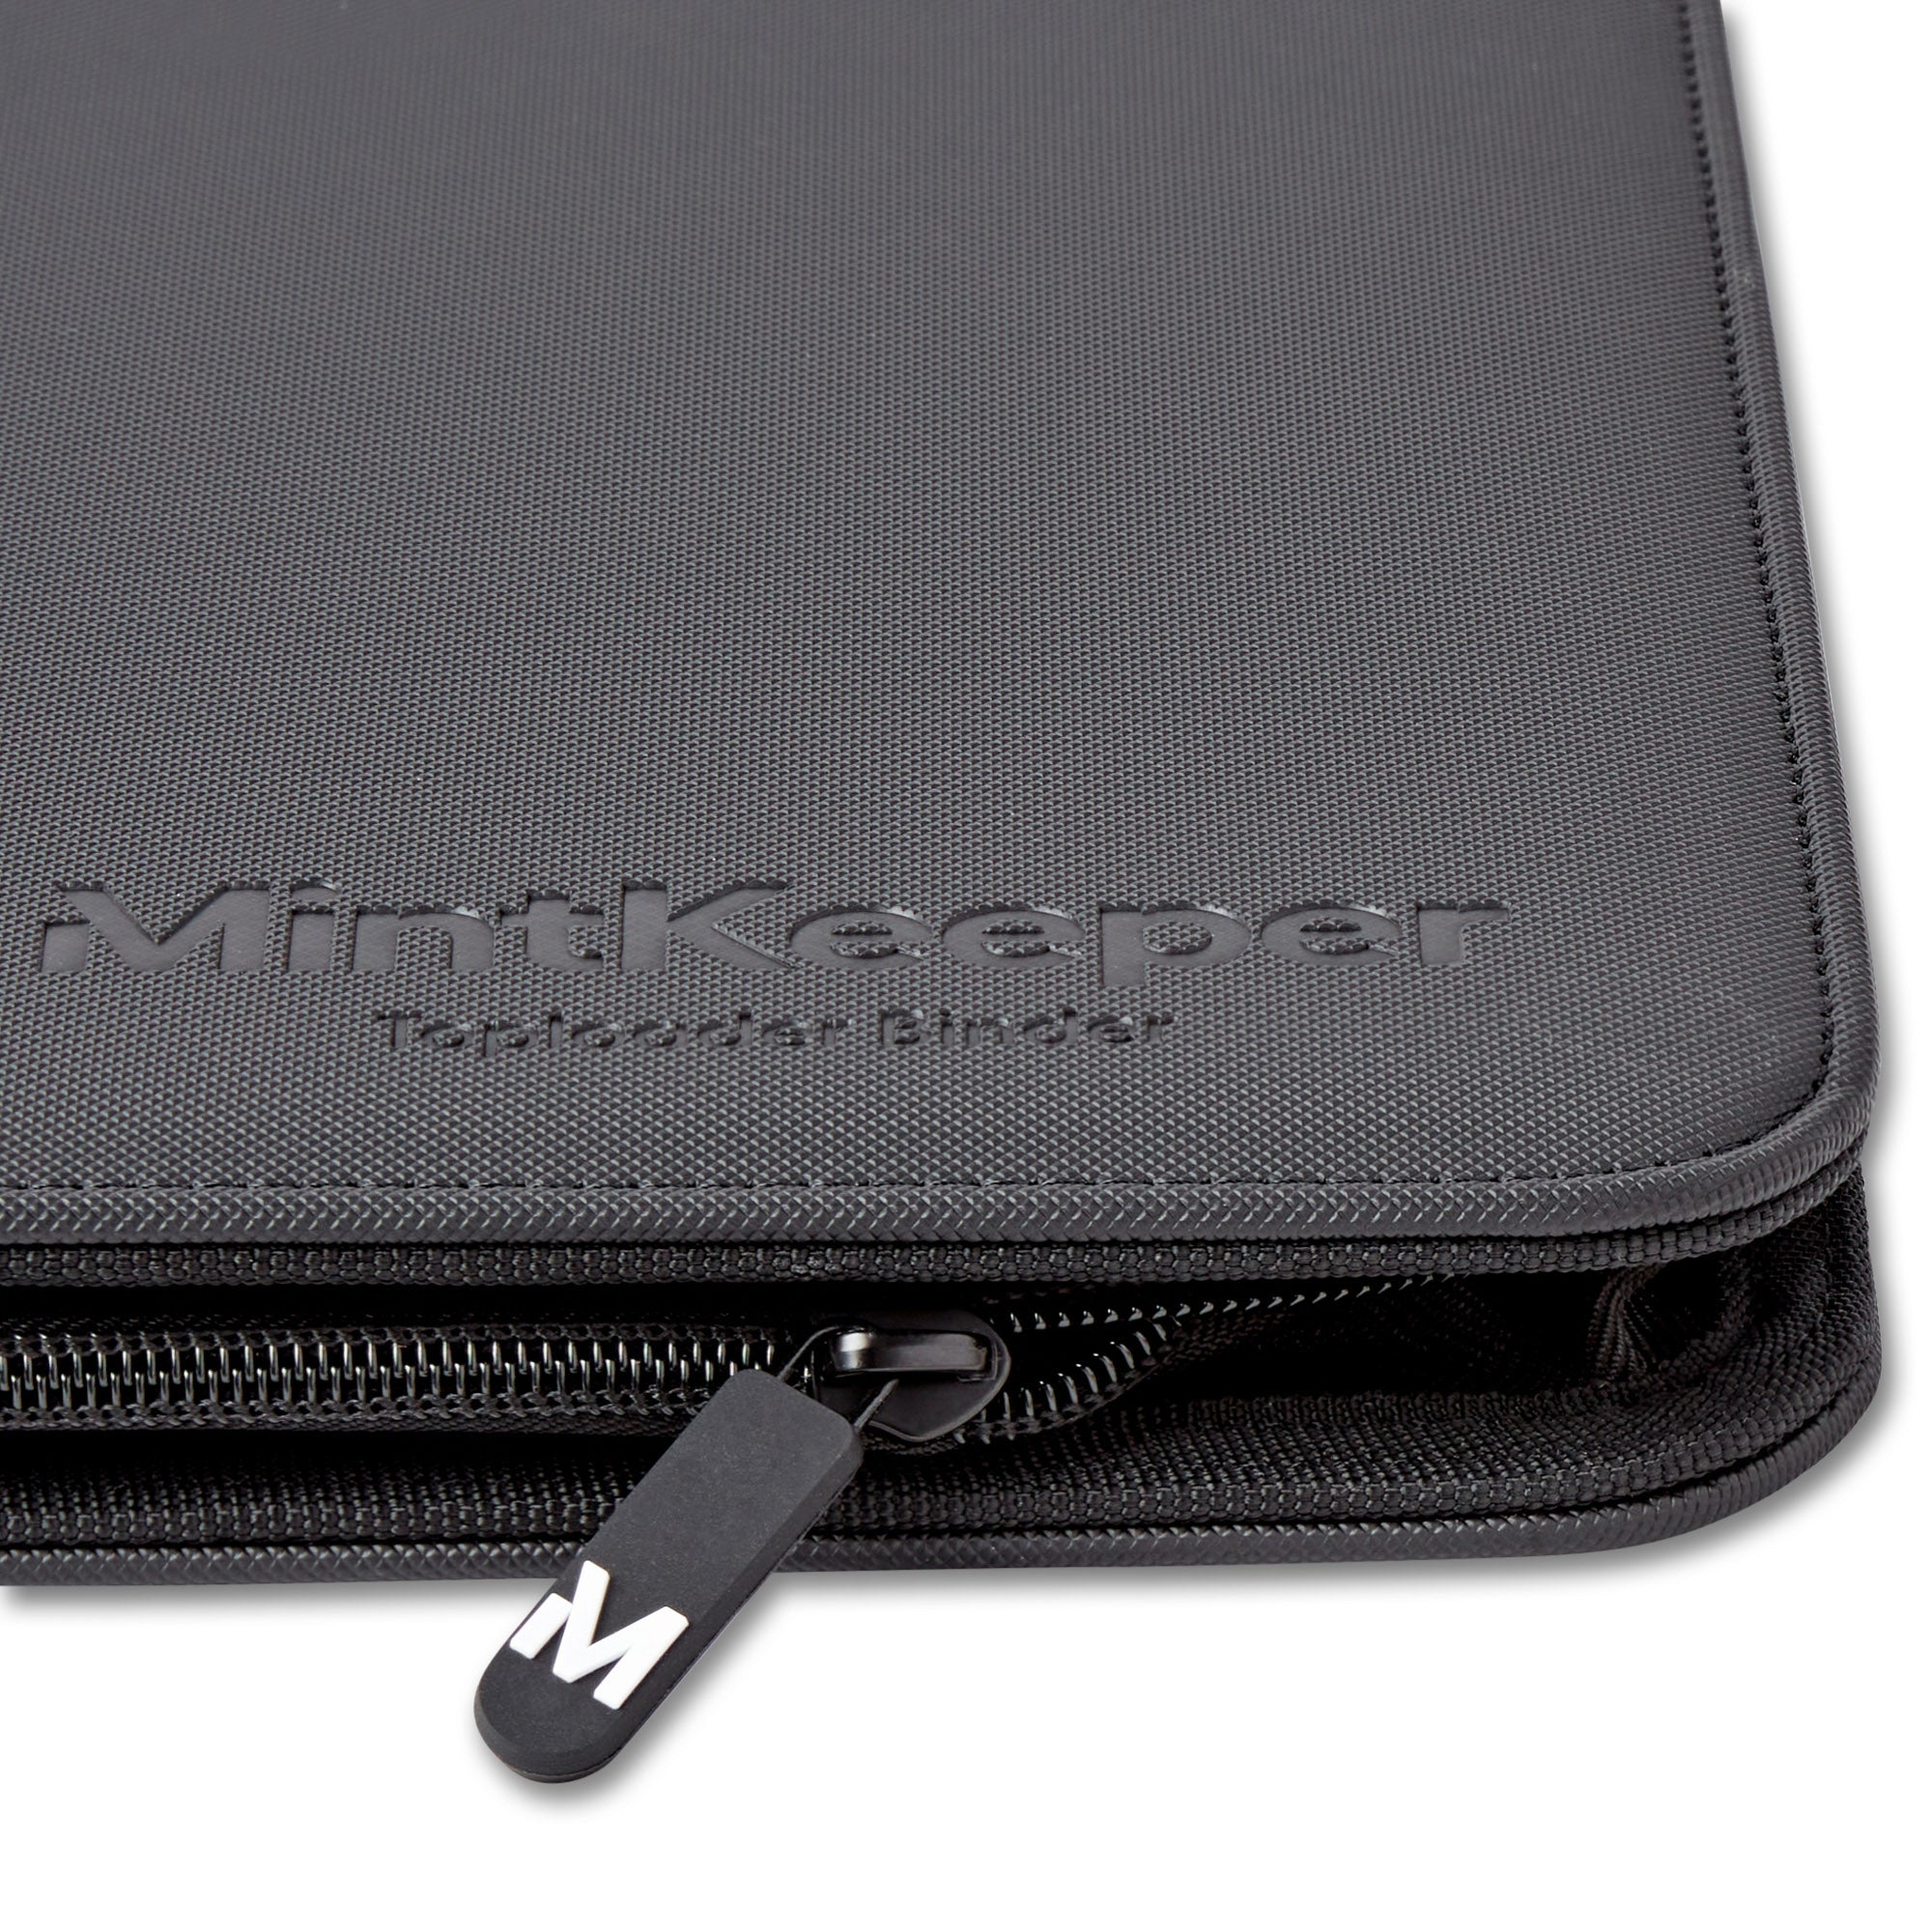 MintKeeper - Toploader Binder - 9 Pocket